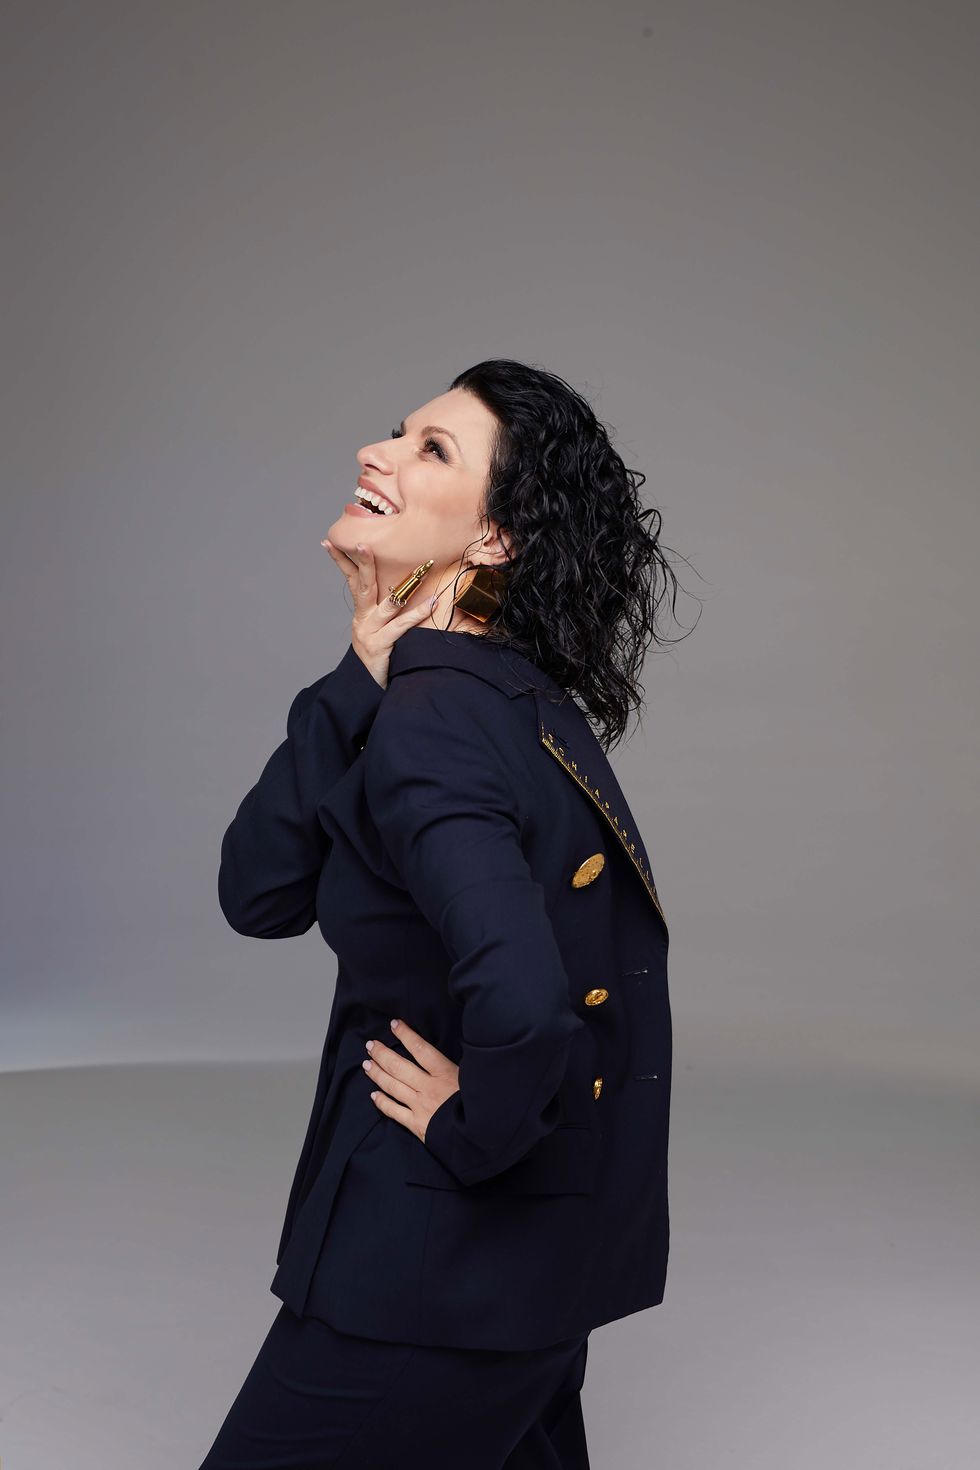 la cantante laura pausini celebra su treinta aniversario sobre los escenarios